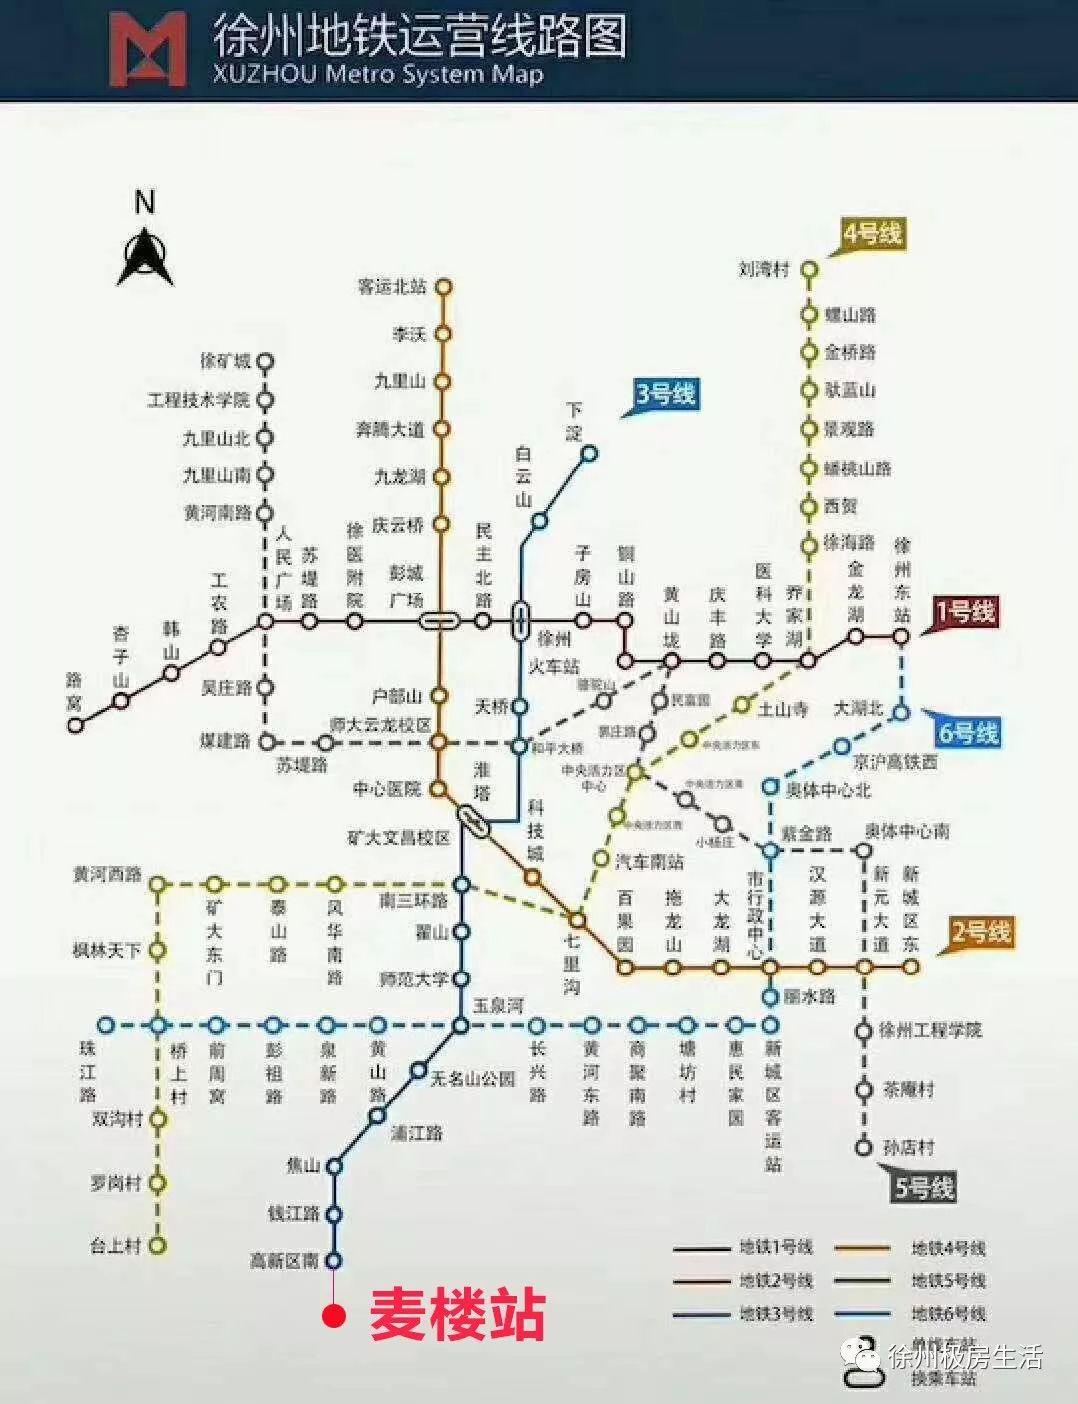 定了徐州地铁距离萧县最近的站是哪里